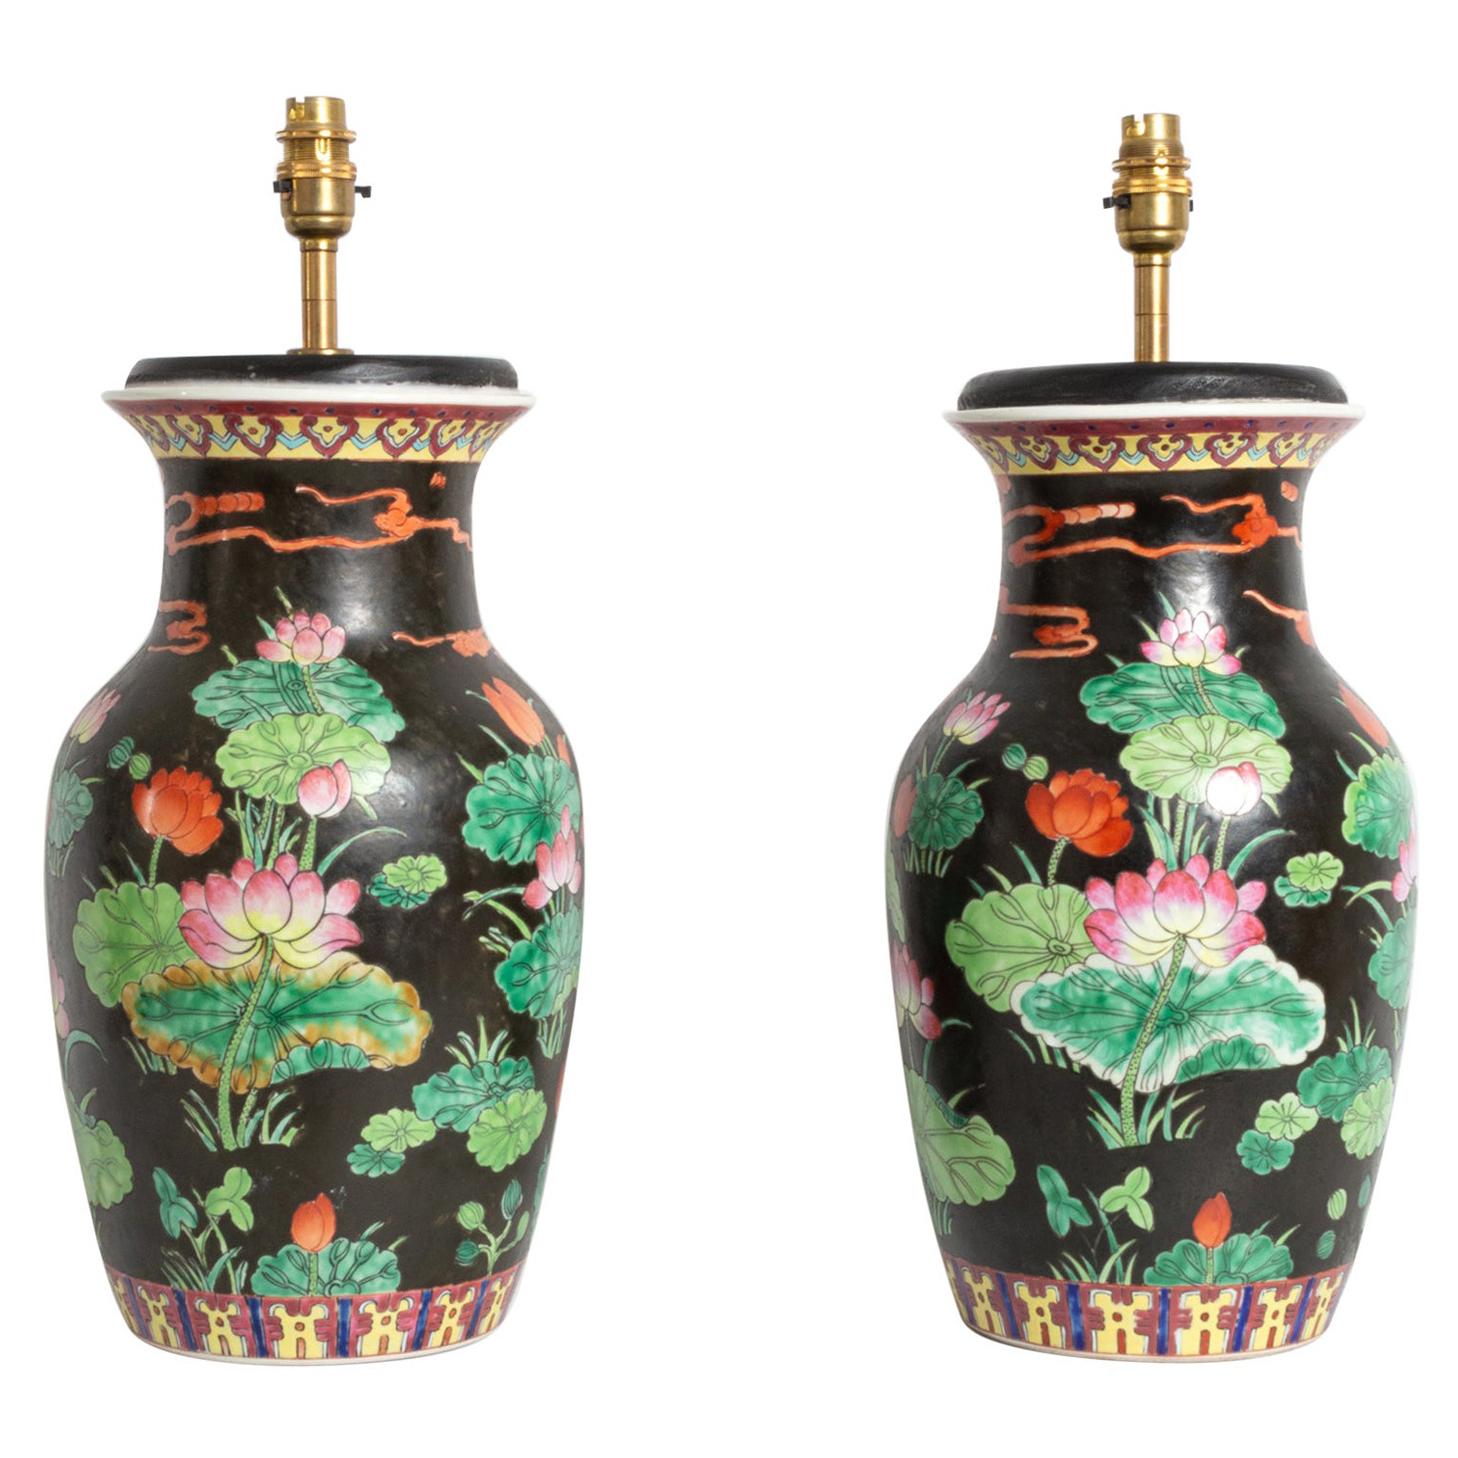 Paire ancienne de lampes-vases chinoises Famille Noire du 19e siècle, vers 1860